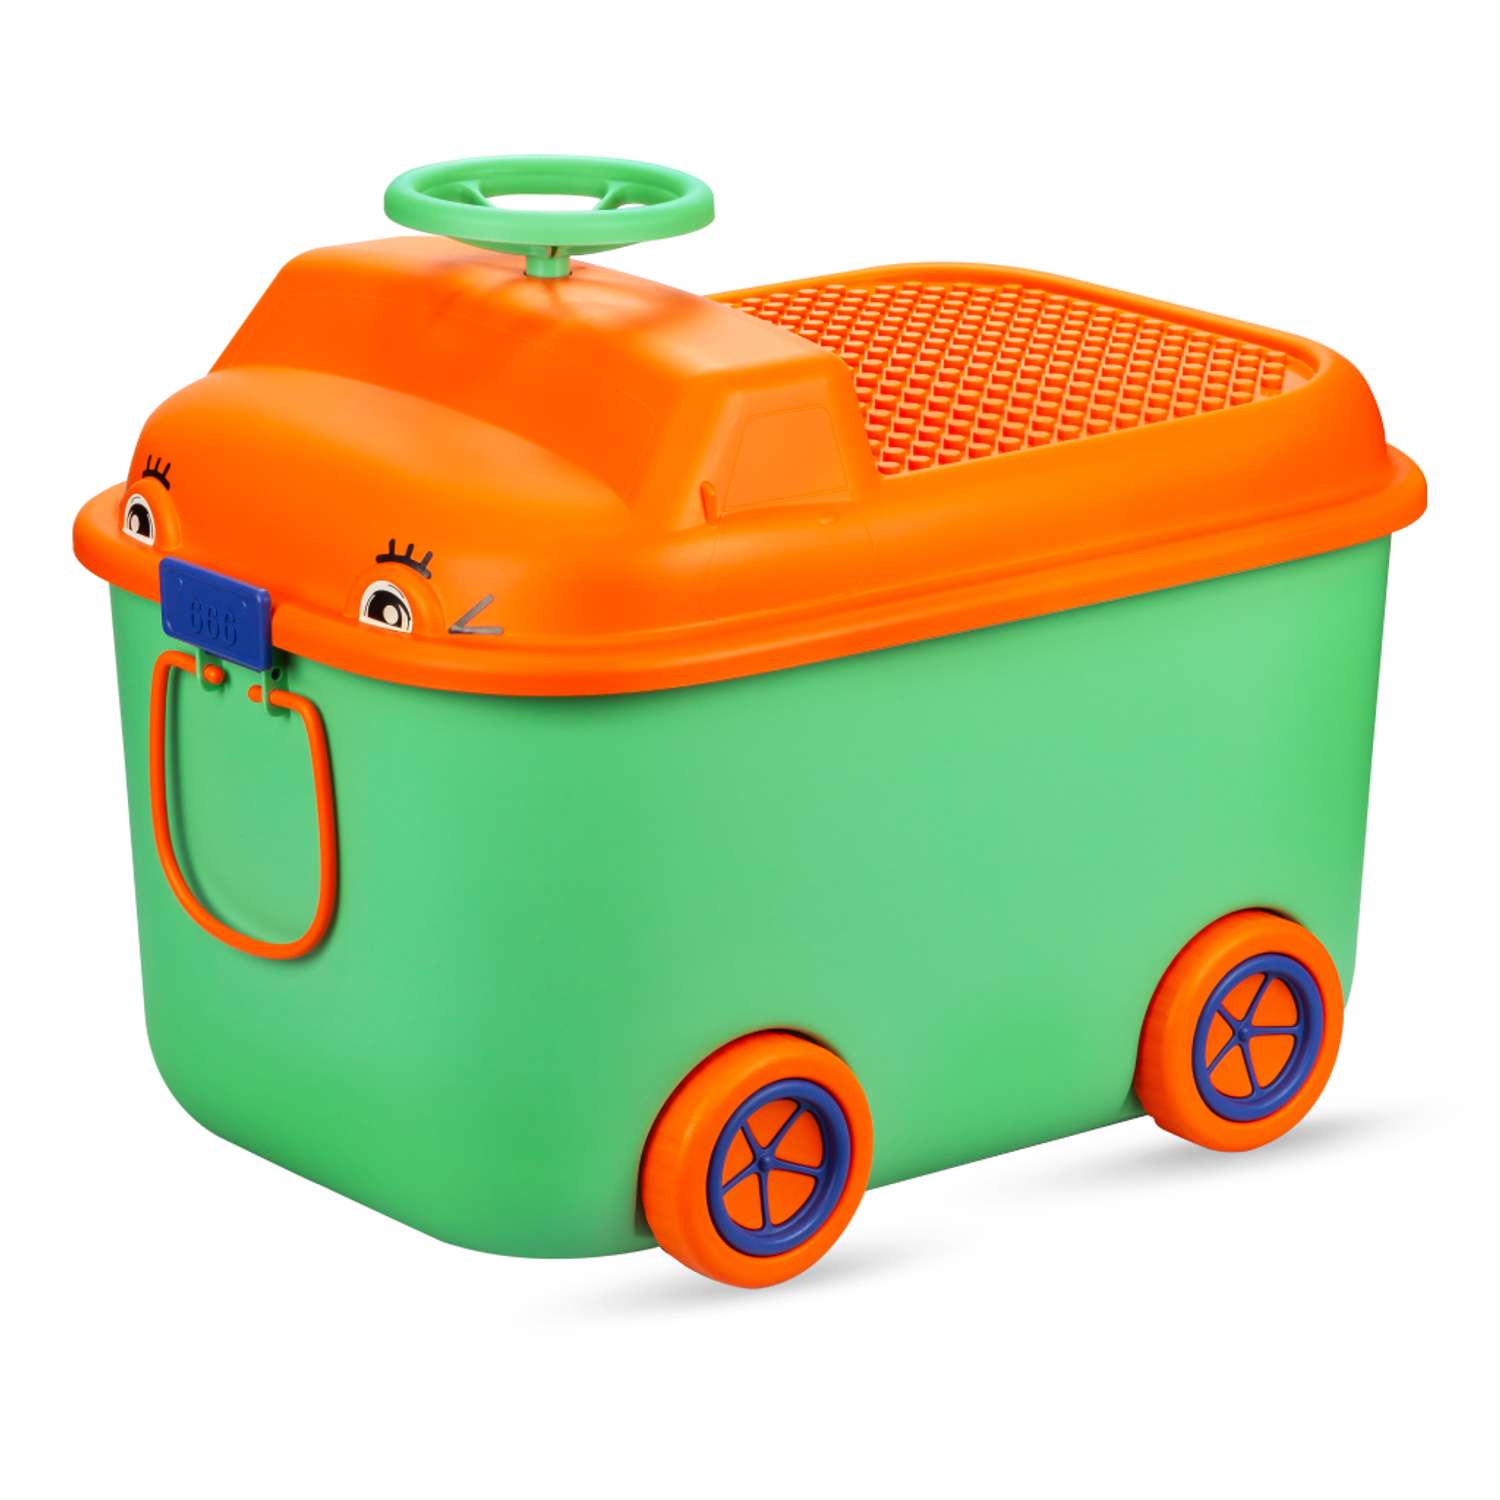 Ящик для хранения игрушек Solmax контейнер на колесиках 54х41.5х38 см зеленый - фото 11